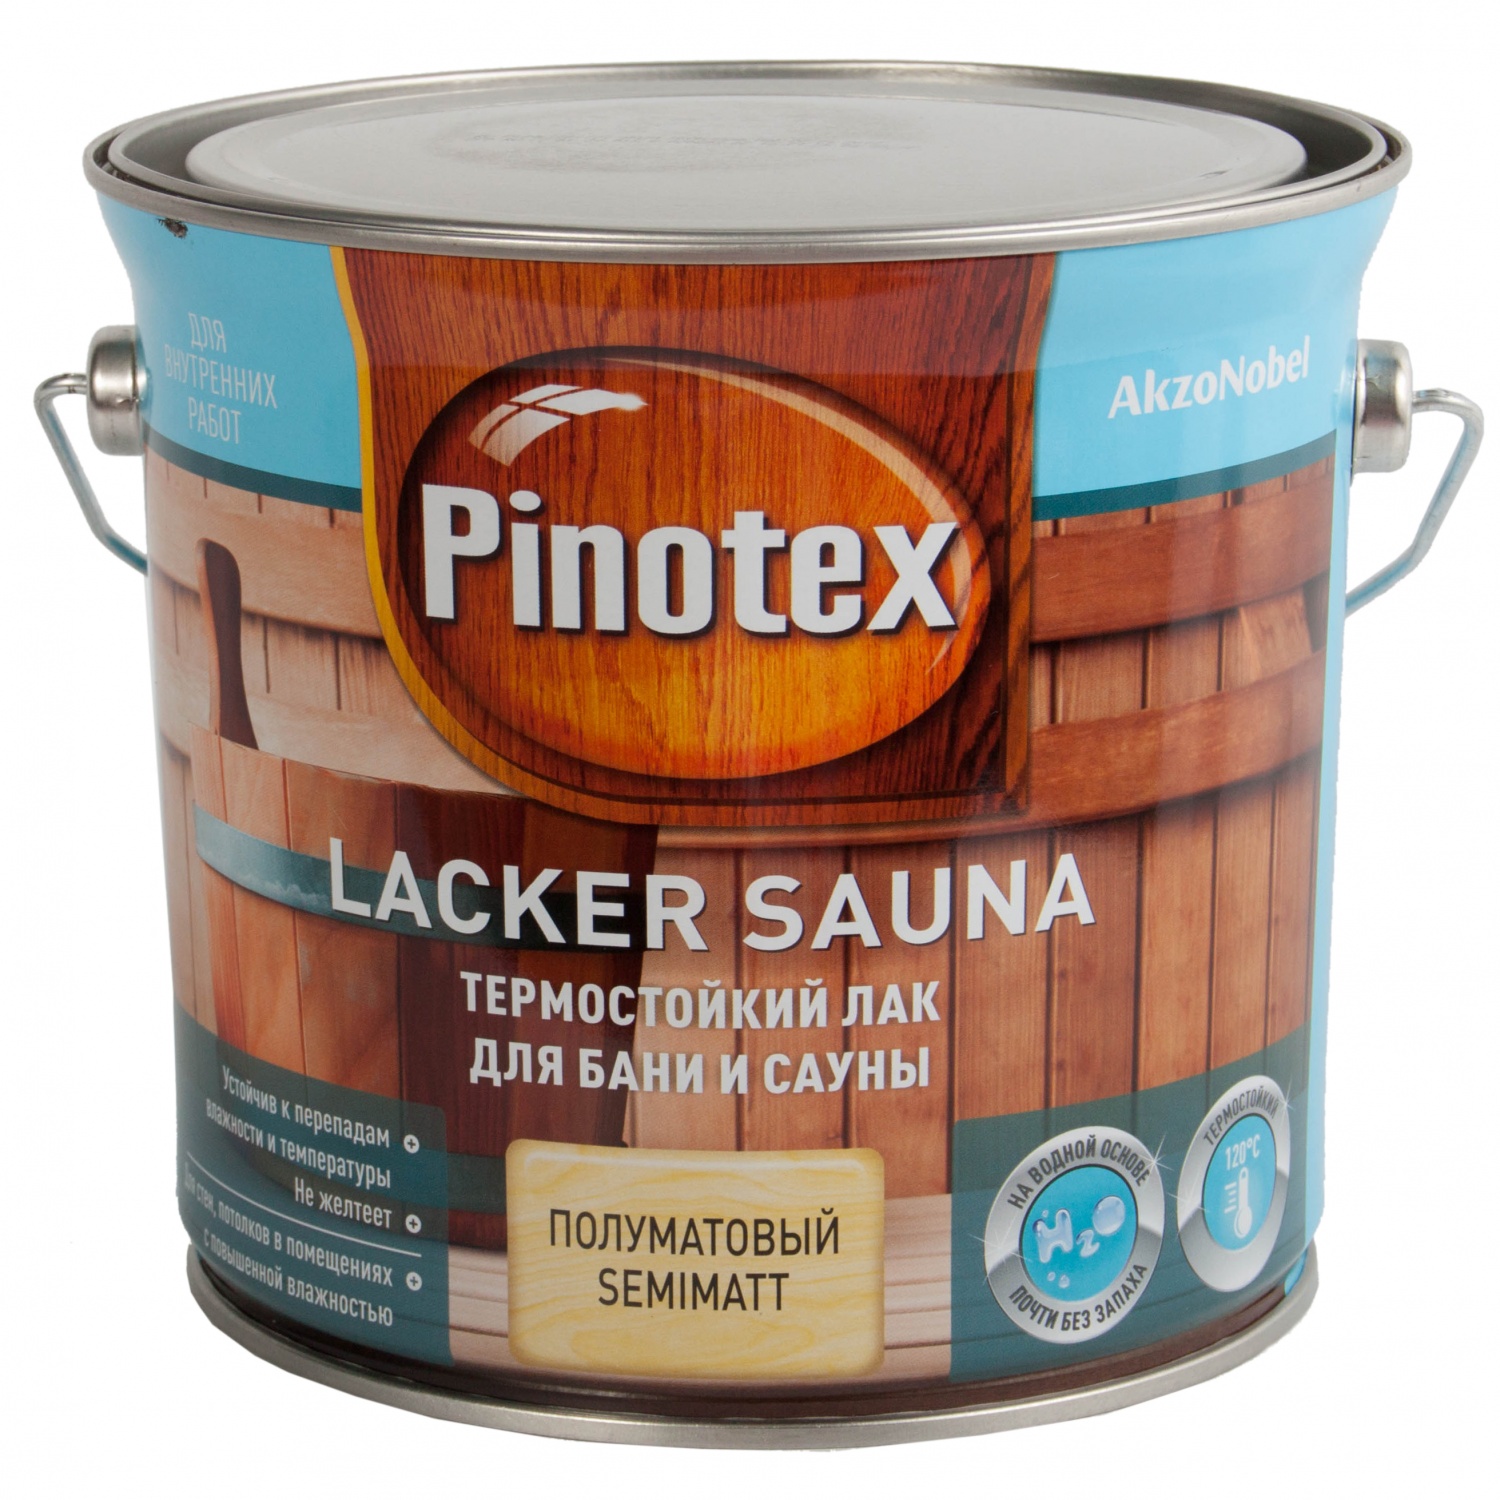 Термостойкий лак Pinotex Lacker Sauna / Пинотекс лакер сауна для сауны и бани, полуматовый на водной основе с возможностью колеровки